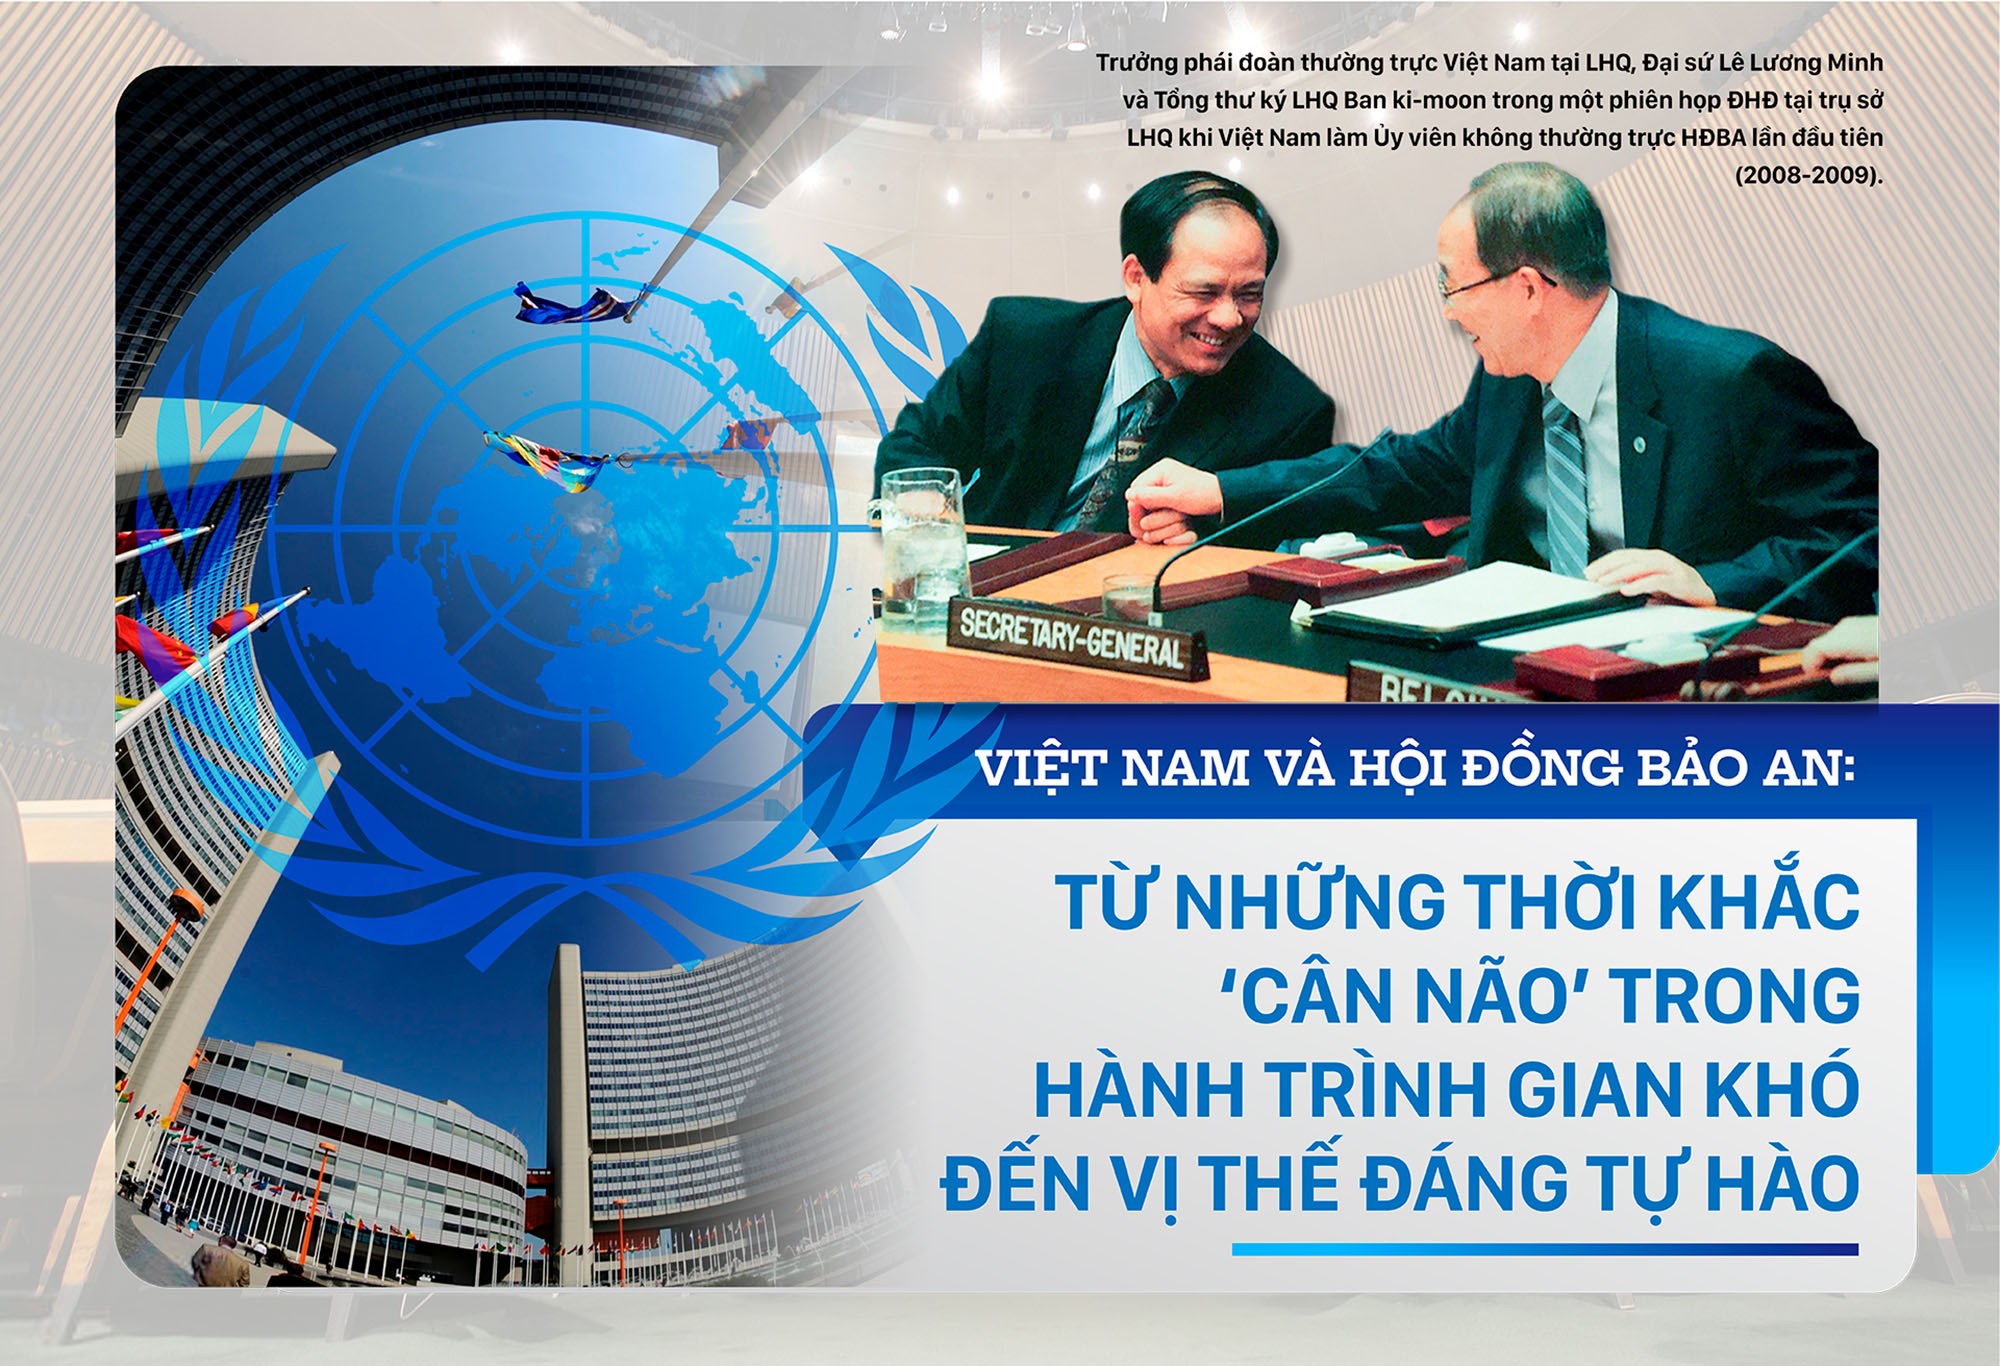 Việt Nam và Hội đồng Bảo an: Từ những thời khắc ‘cân não’ trong hành trình gian khó đến vị thế đáng tự hào